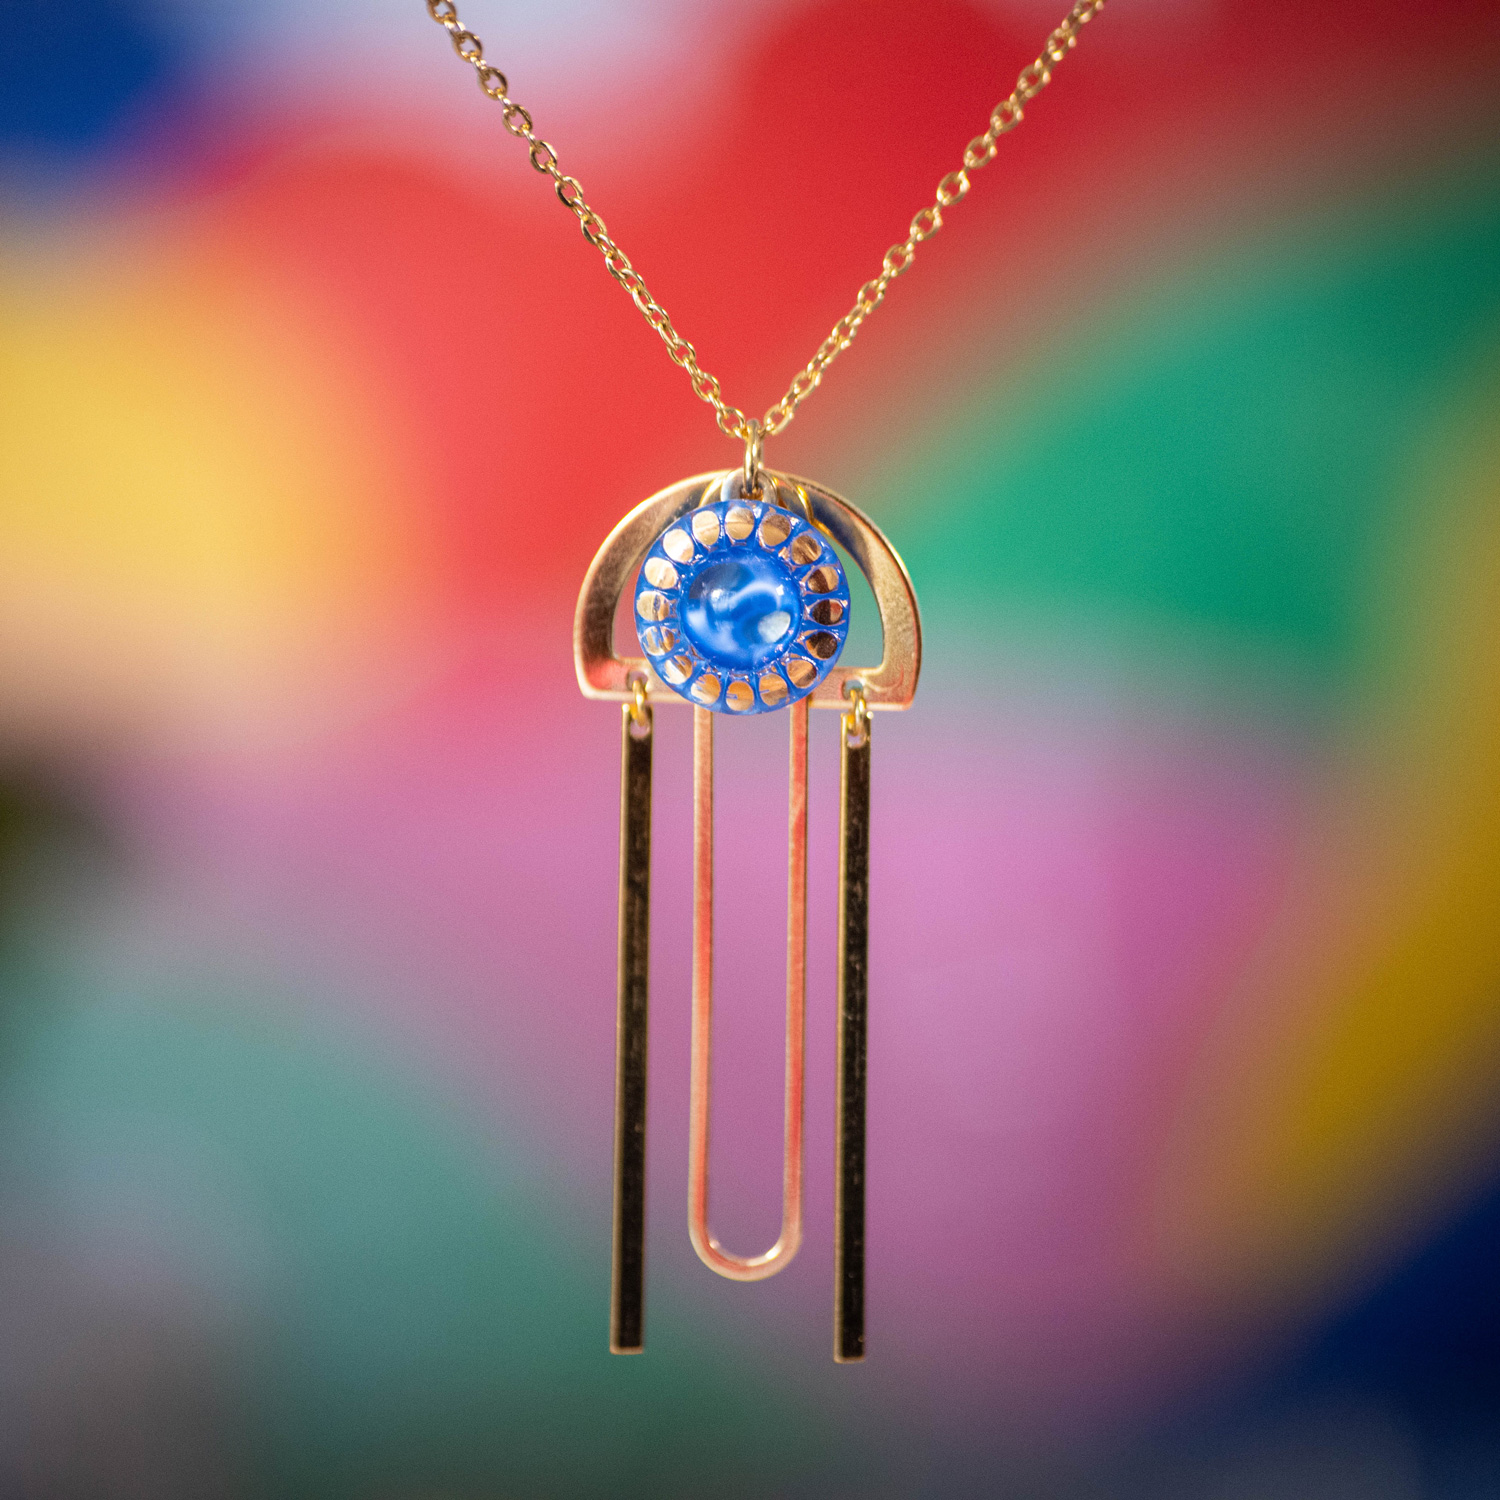 Assuna Medusa Pelagia collier Fantine bleu et or – bijou vintage bouton ancien rétro collier ajouré collier léger bijou unique